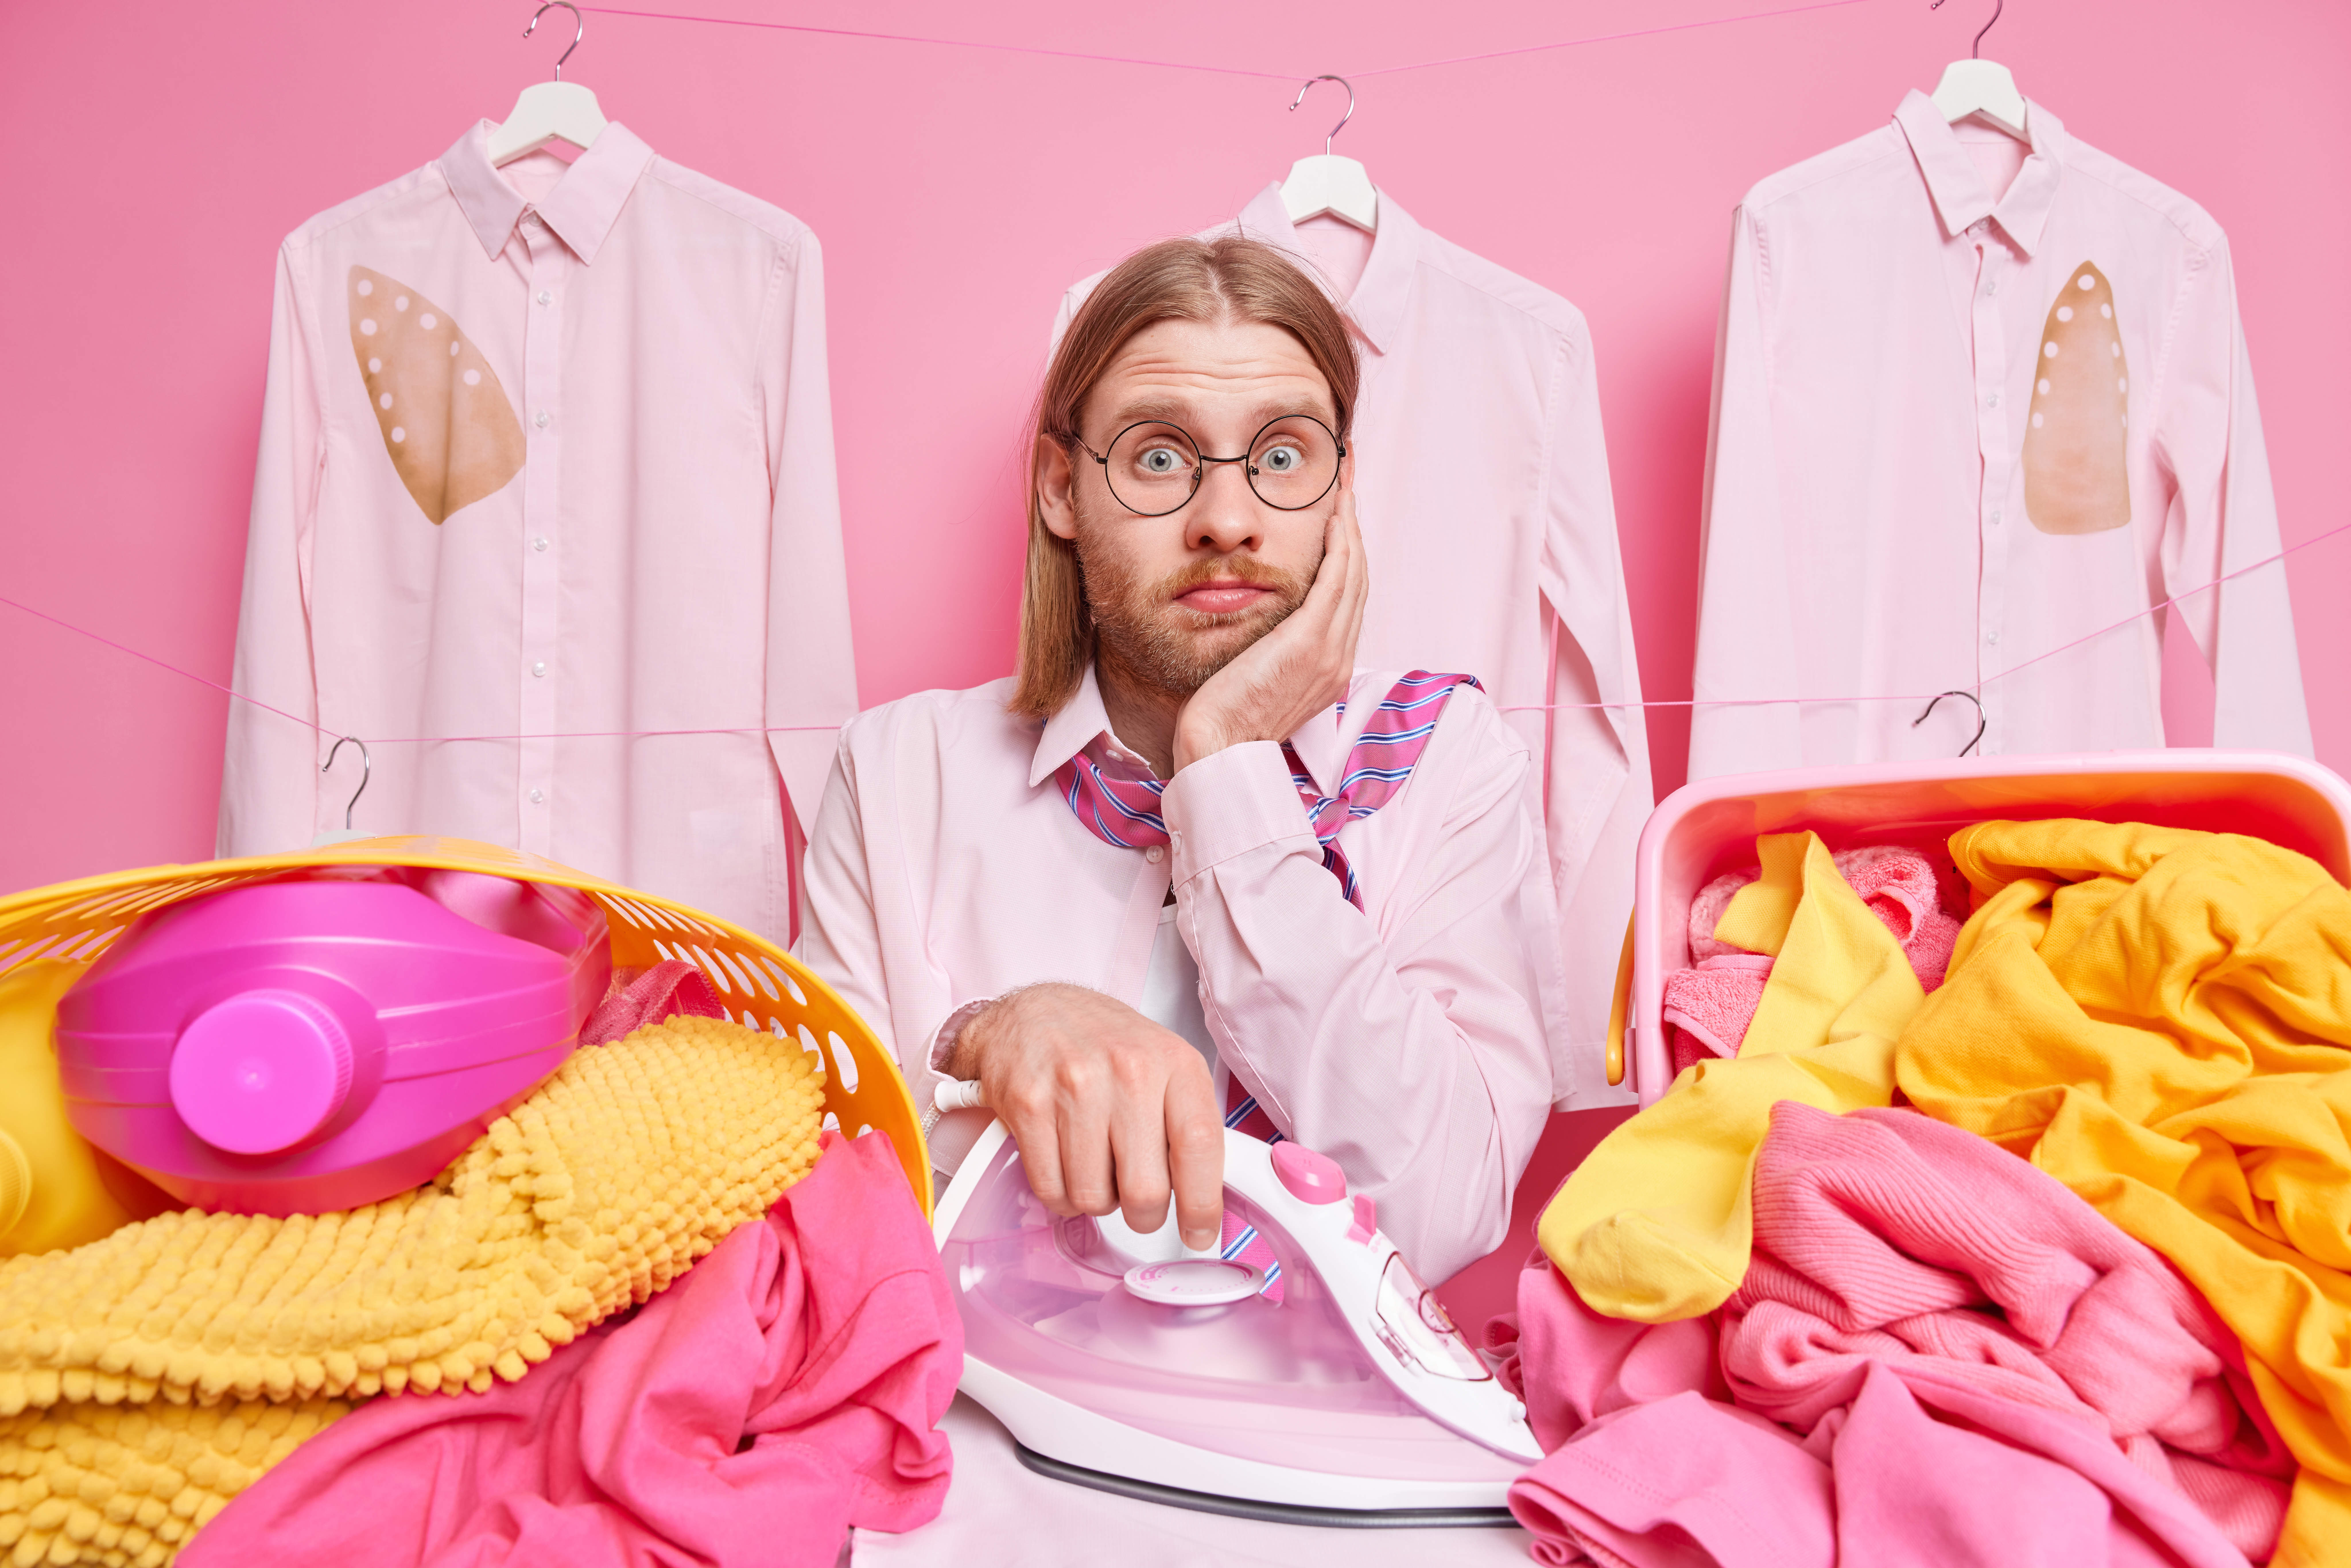 Mann hält ein Bügeleisen inmitten von rosa und gelber Wäsche | Quelle: wayhomestudio auf Freepik